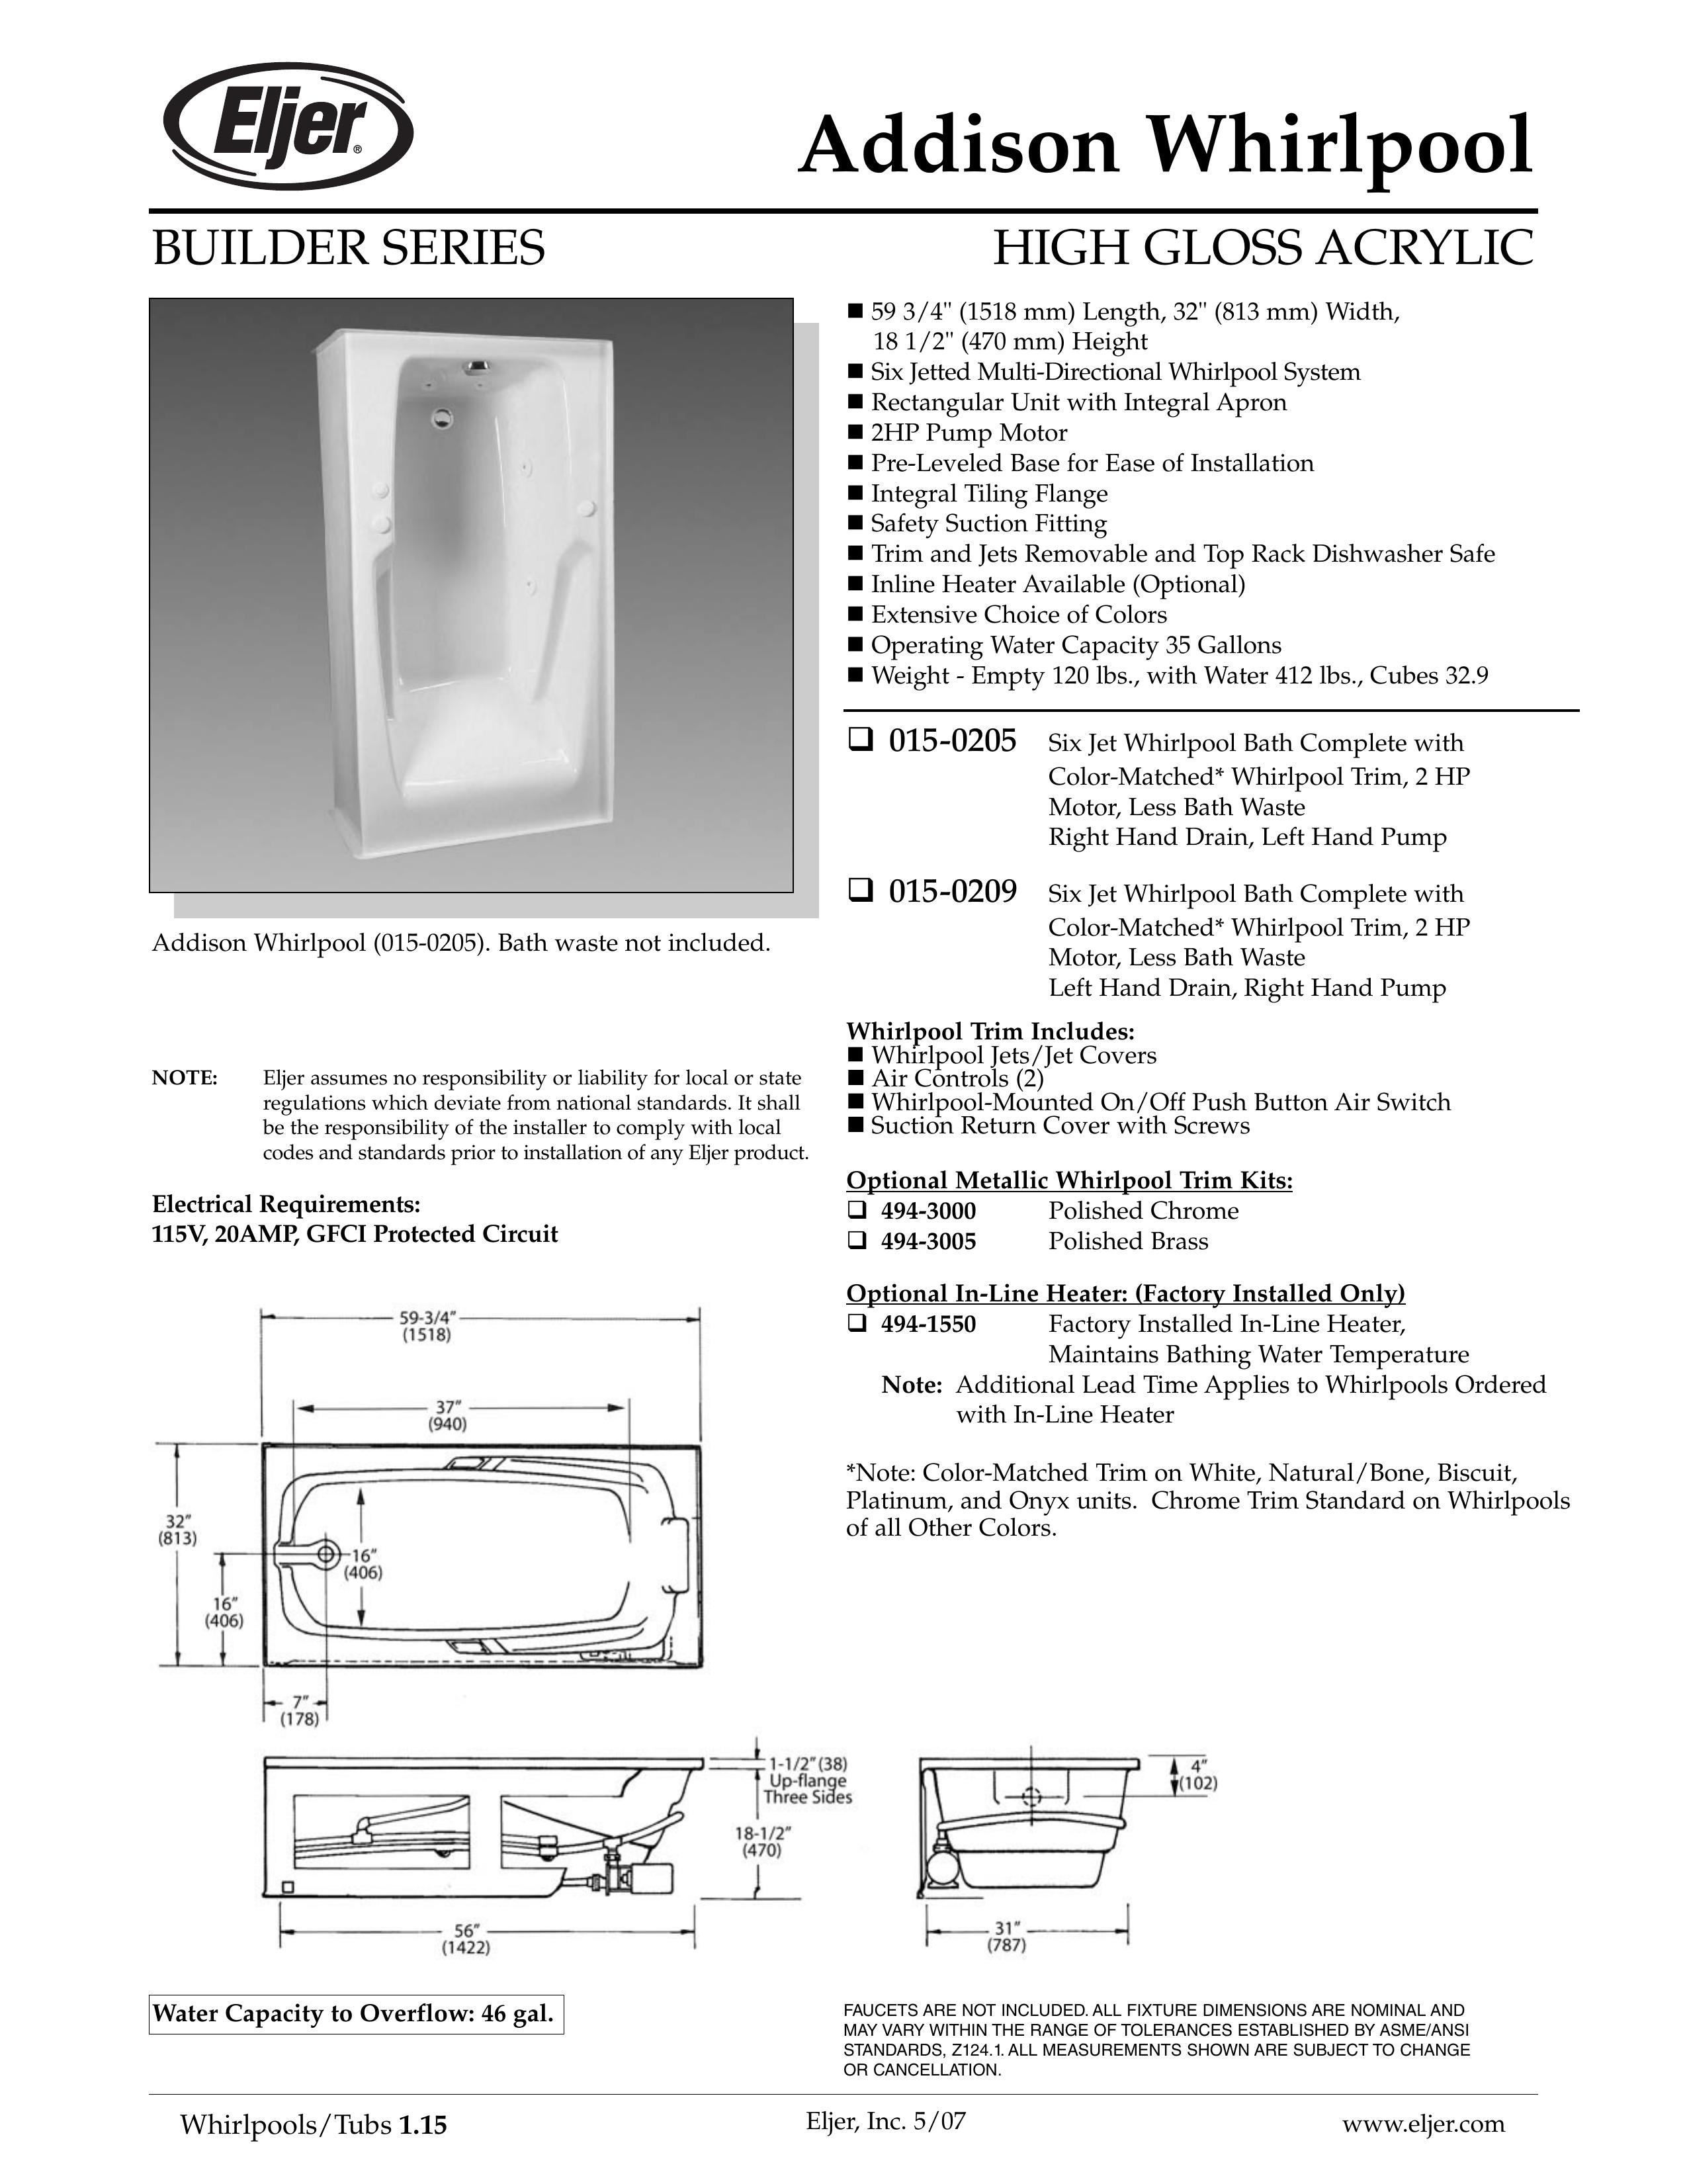 American Standard 015-0205 Hot Tub User Manual